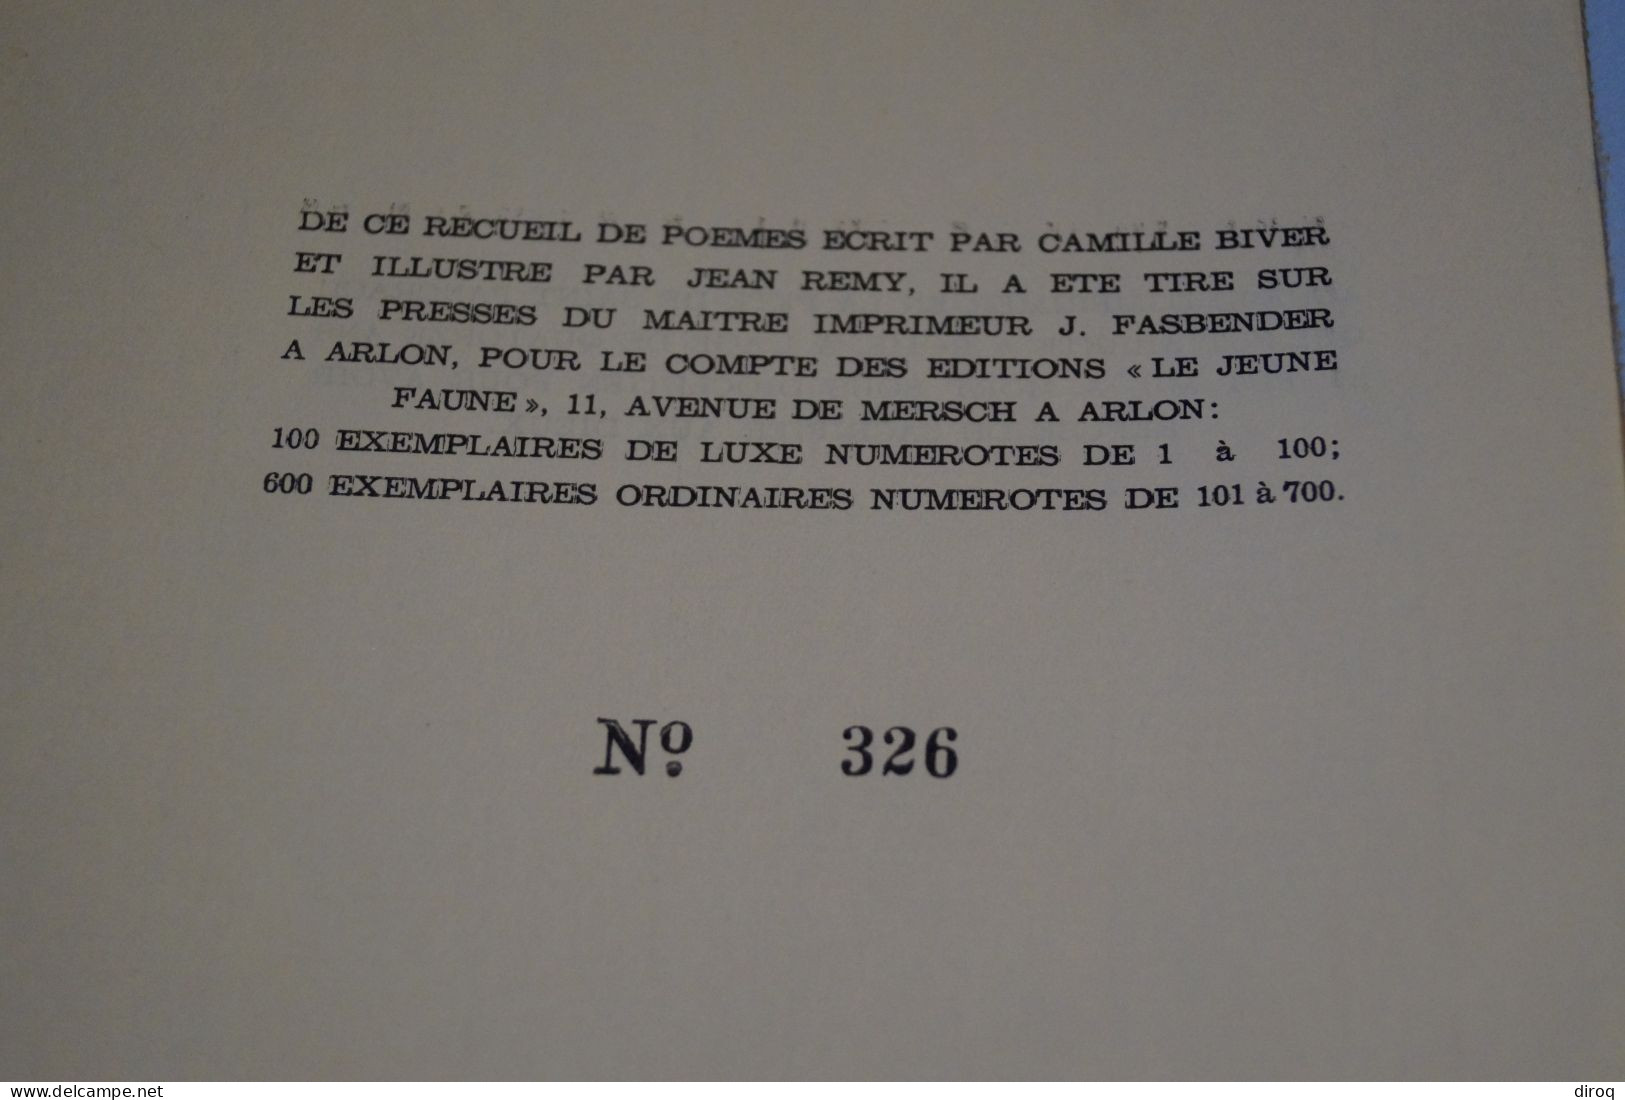 RARE,Camille Biver,Jean Remy,dédicacé,Je n'ai jamais aimer personne,22,5 Cm./16 Cm.56 pages